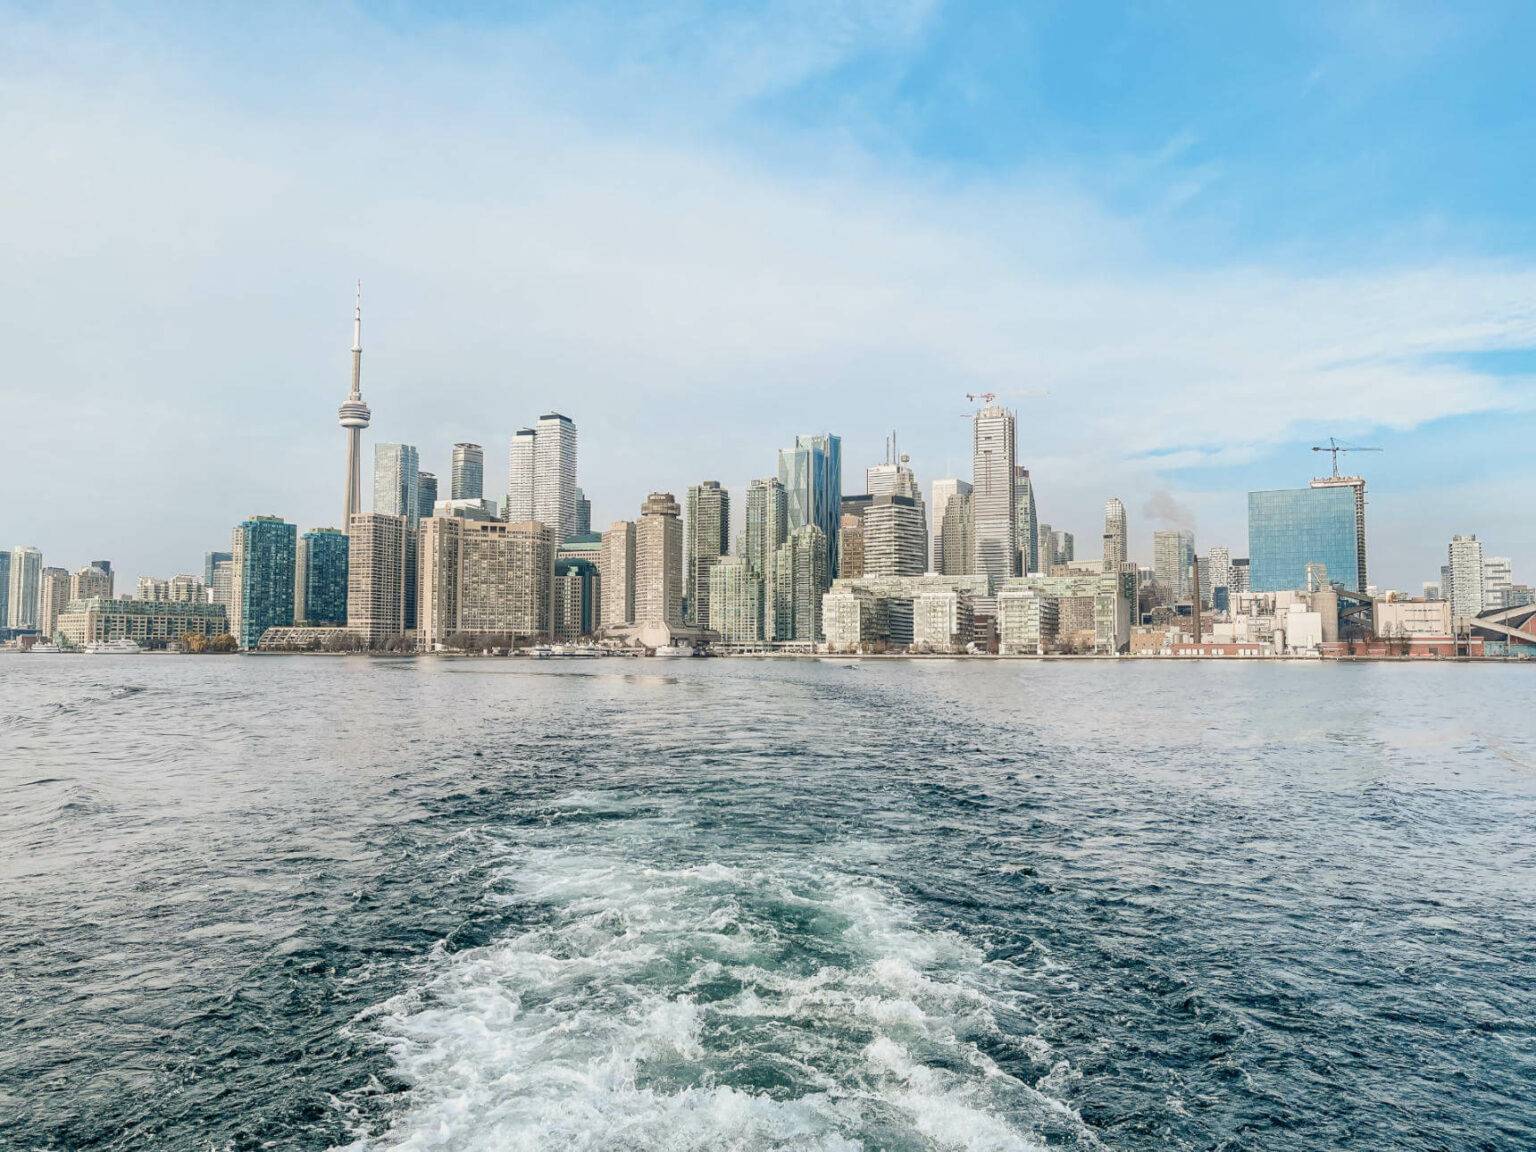 Die Metropole Toronto bietet eine beeindruckende Skyline.